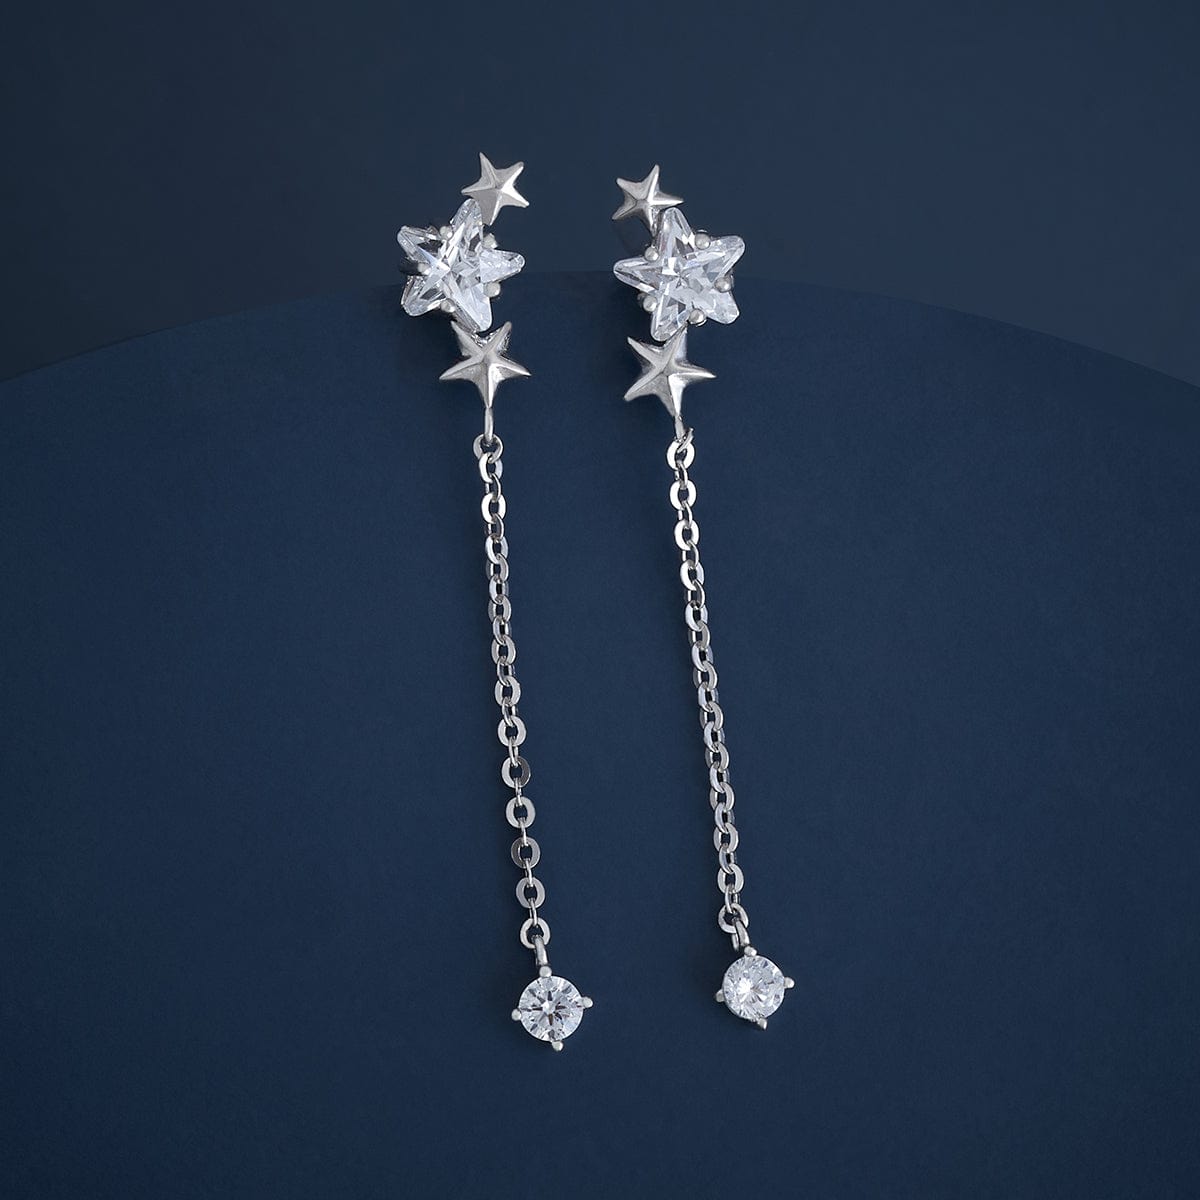 Long Drop Sterling Silver Pearl Earrings - The Silver Alchemist